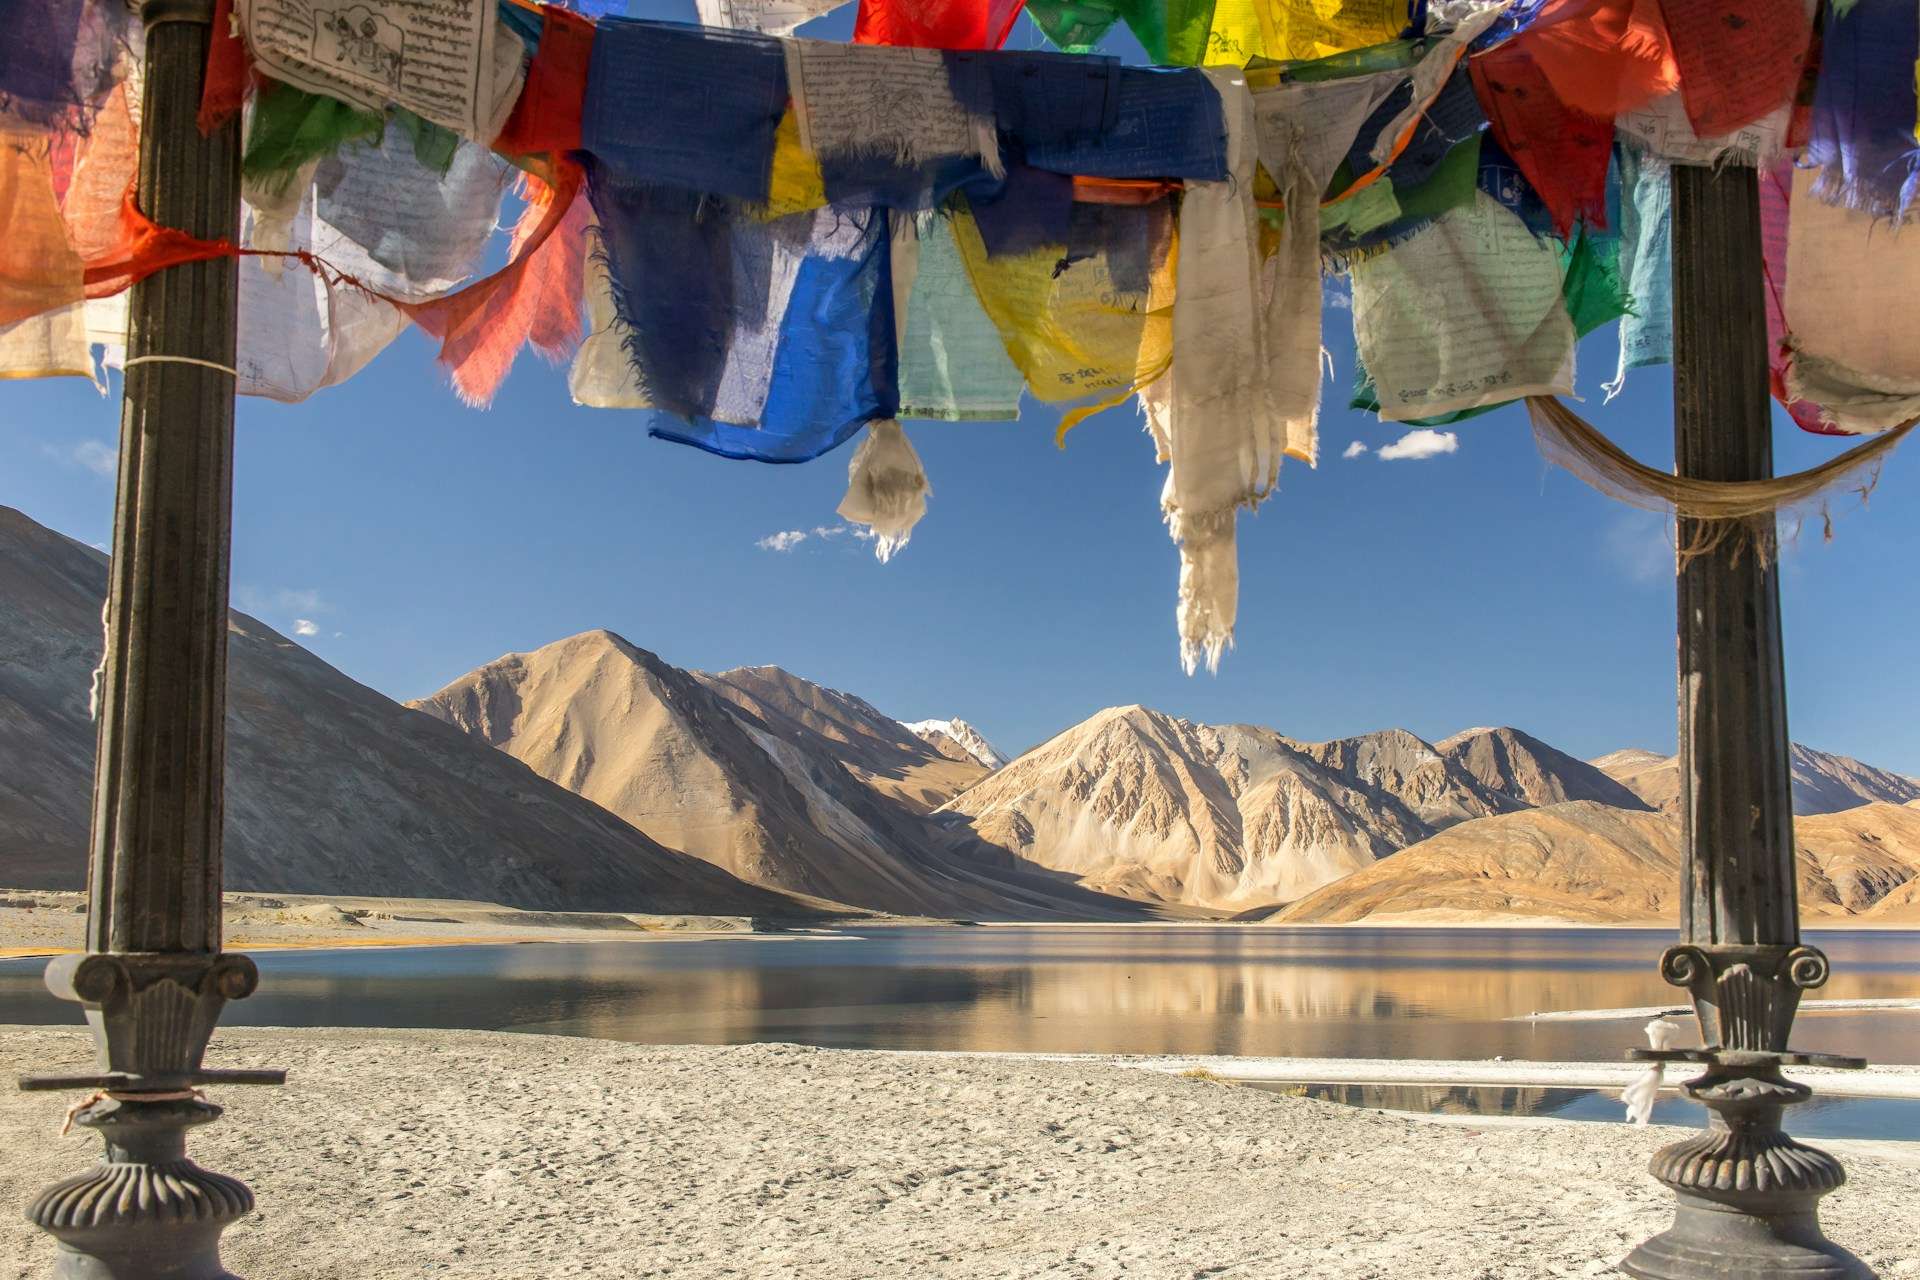 NestQuest Adventure In Ladakh